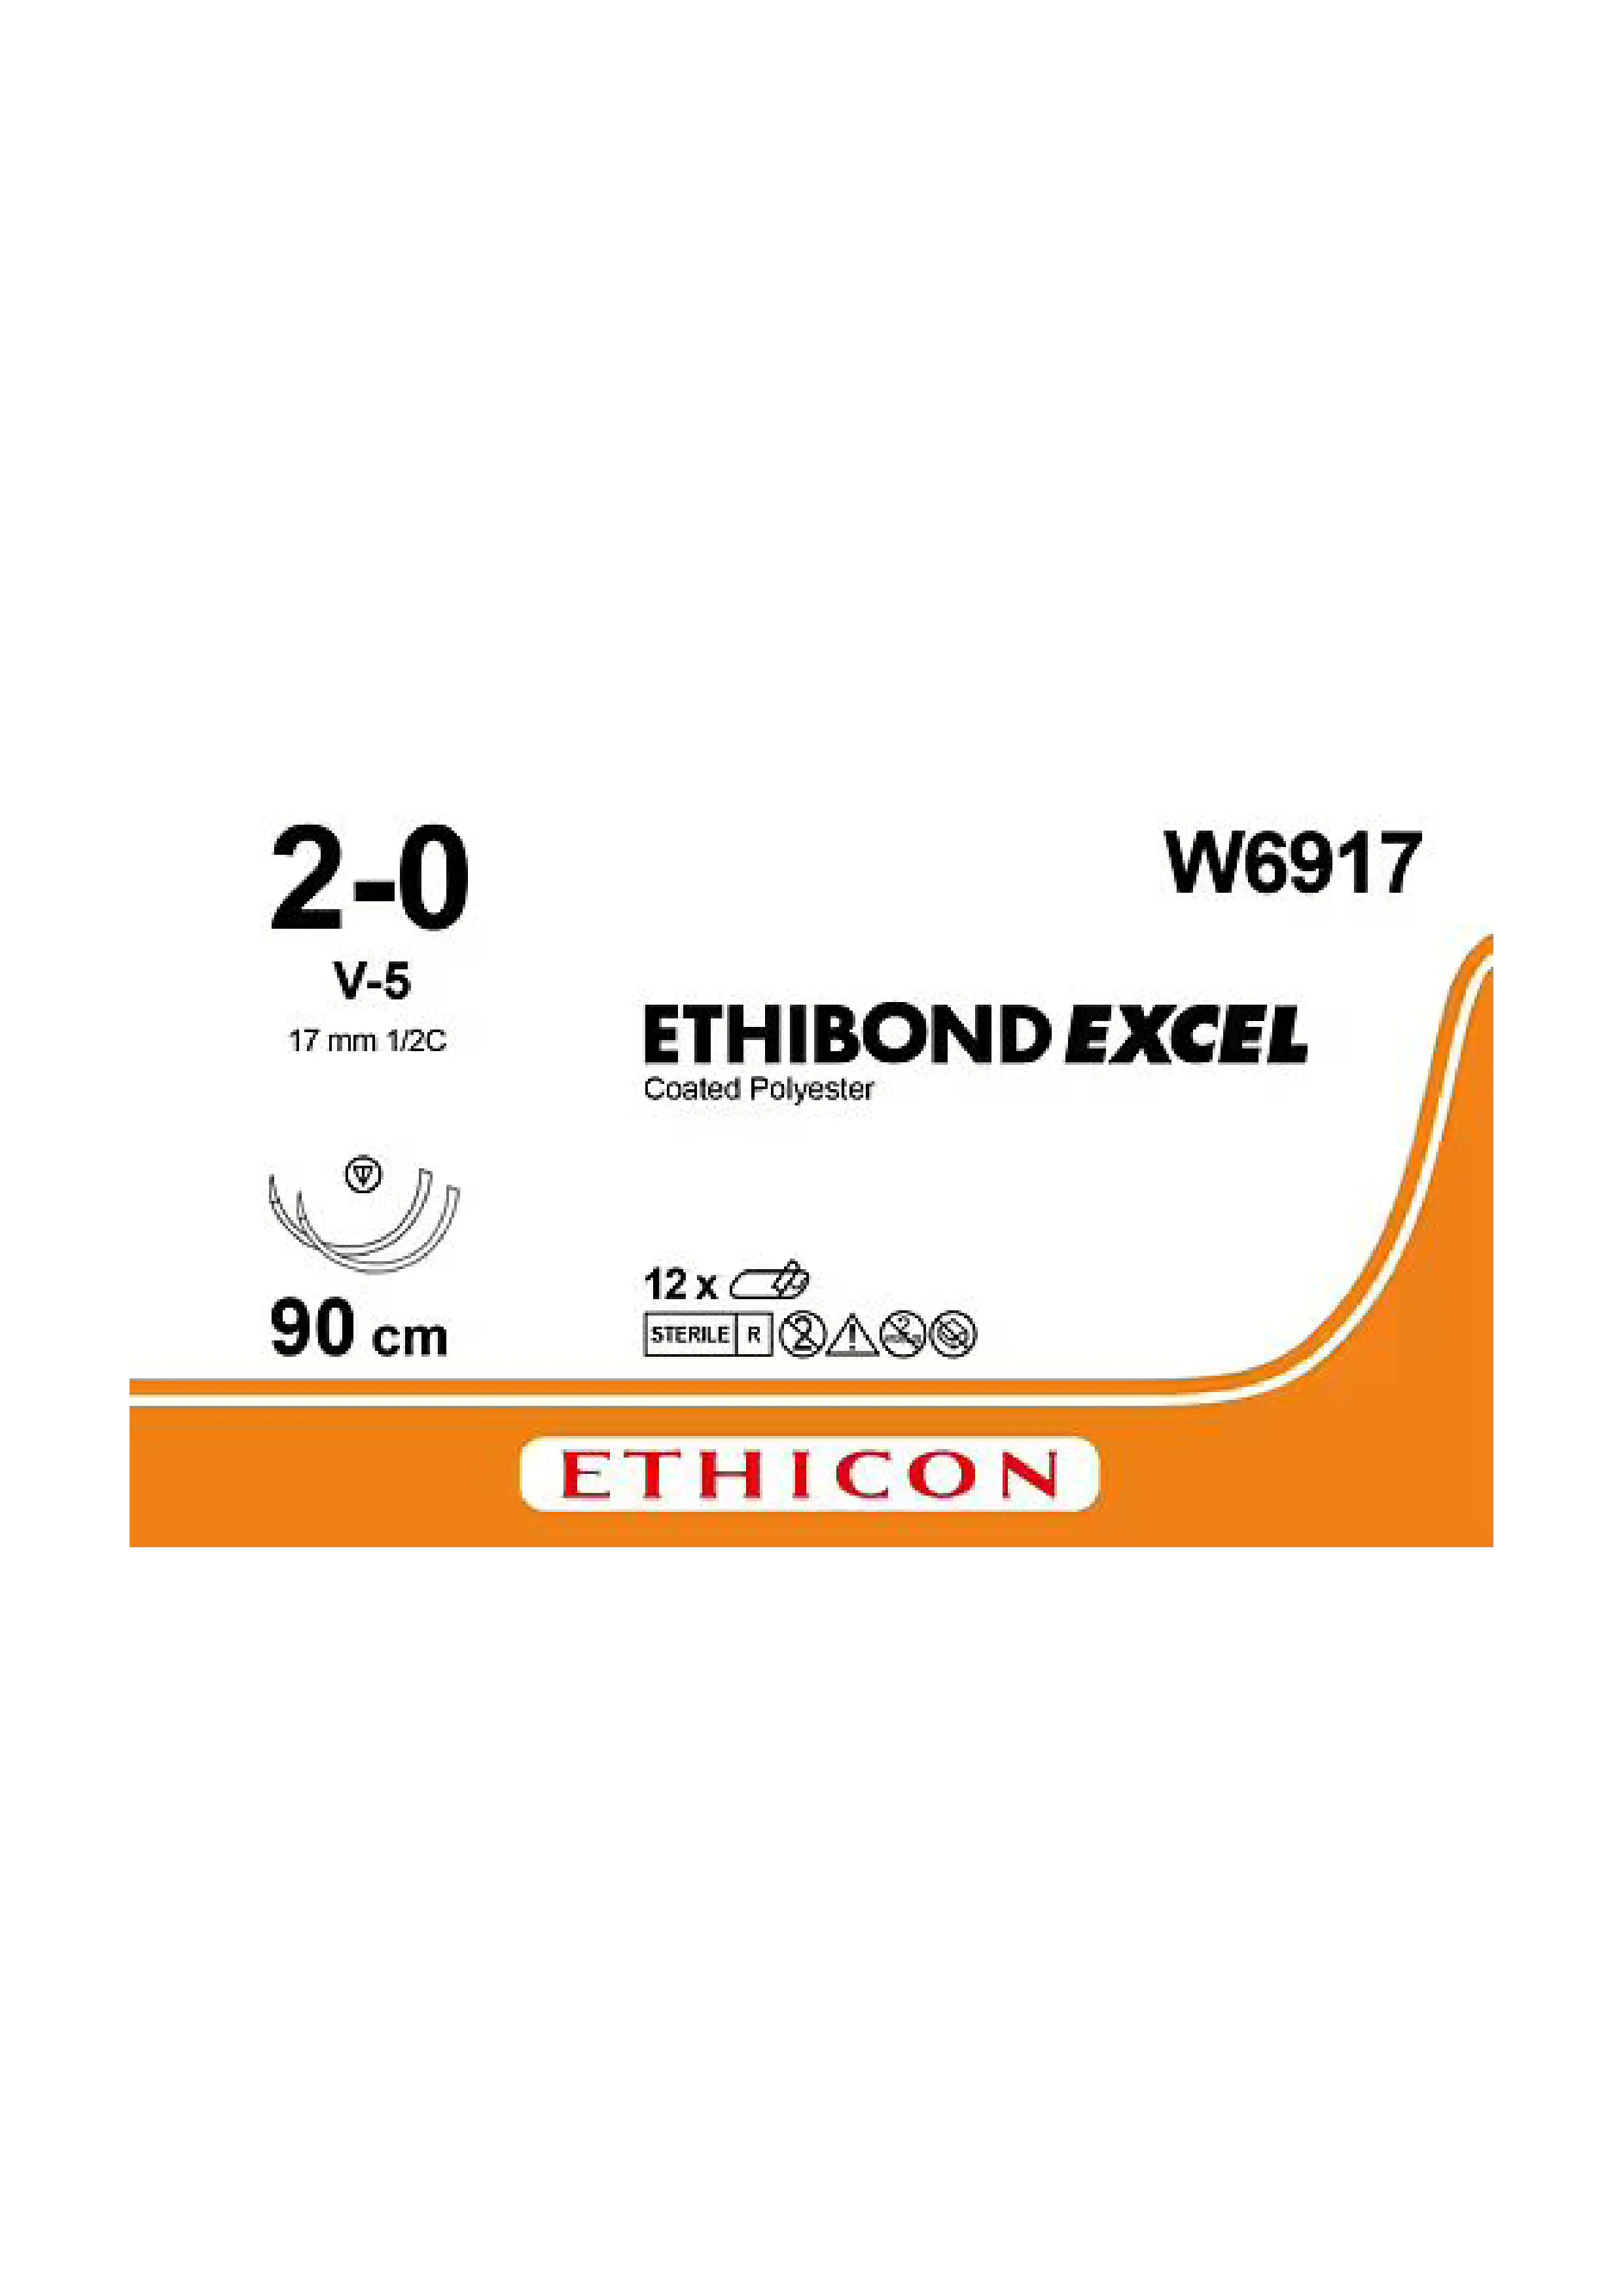 Ethicon Ethibond Sutures USP 2-0, 1/2 Circle Tapercut V-5 Double Needle - W6917